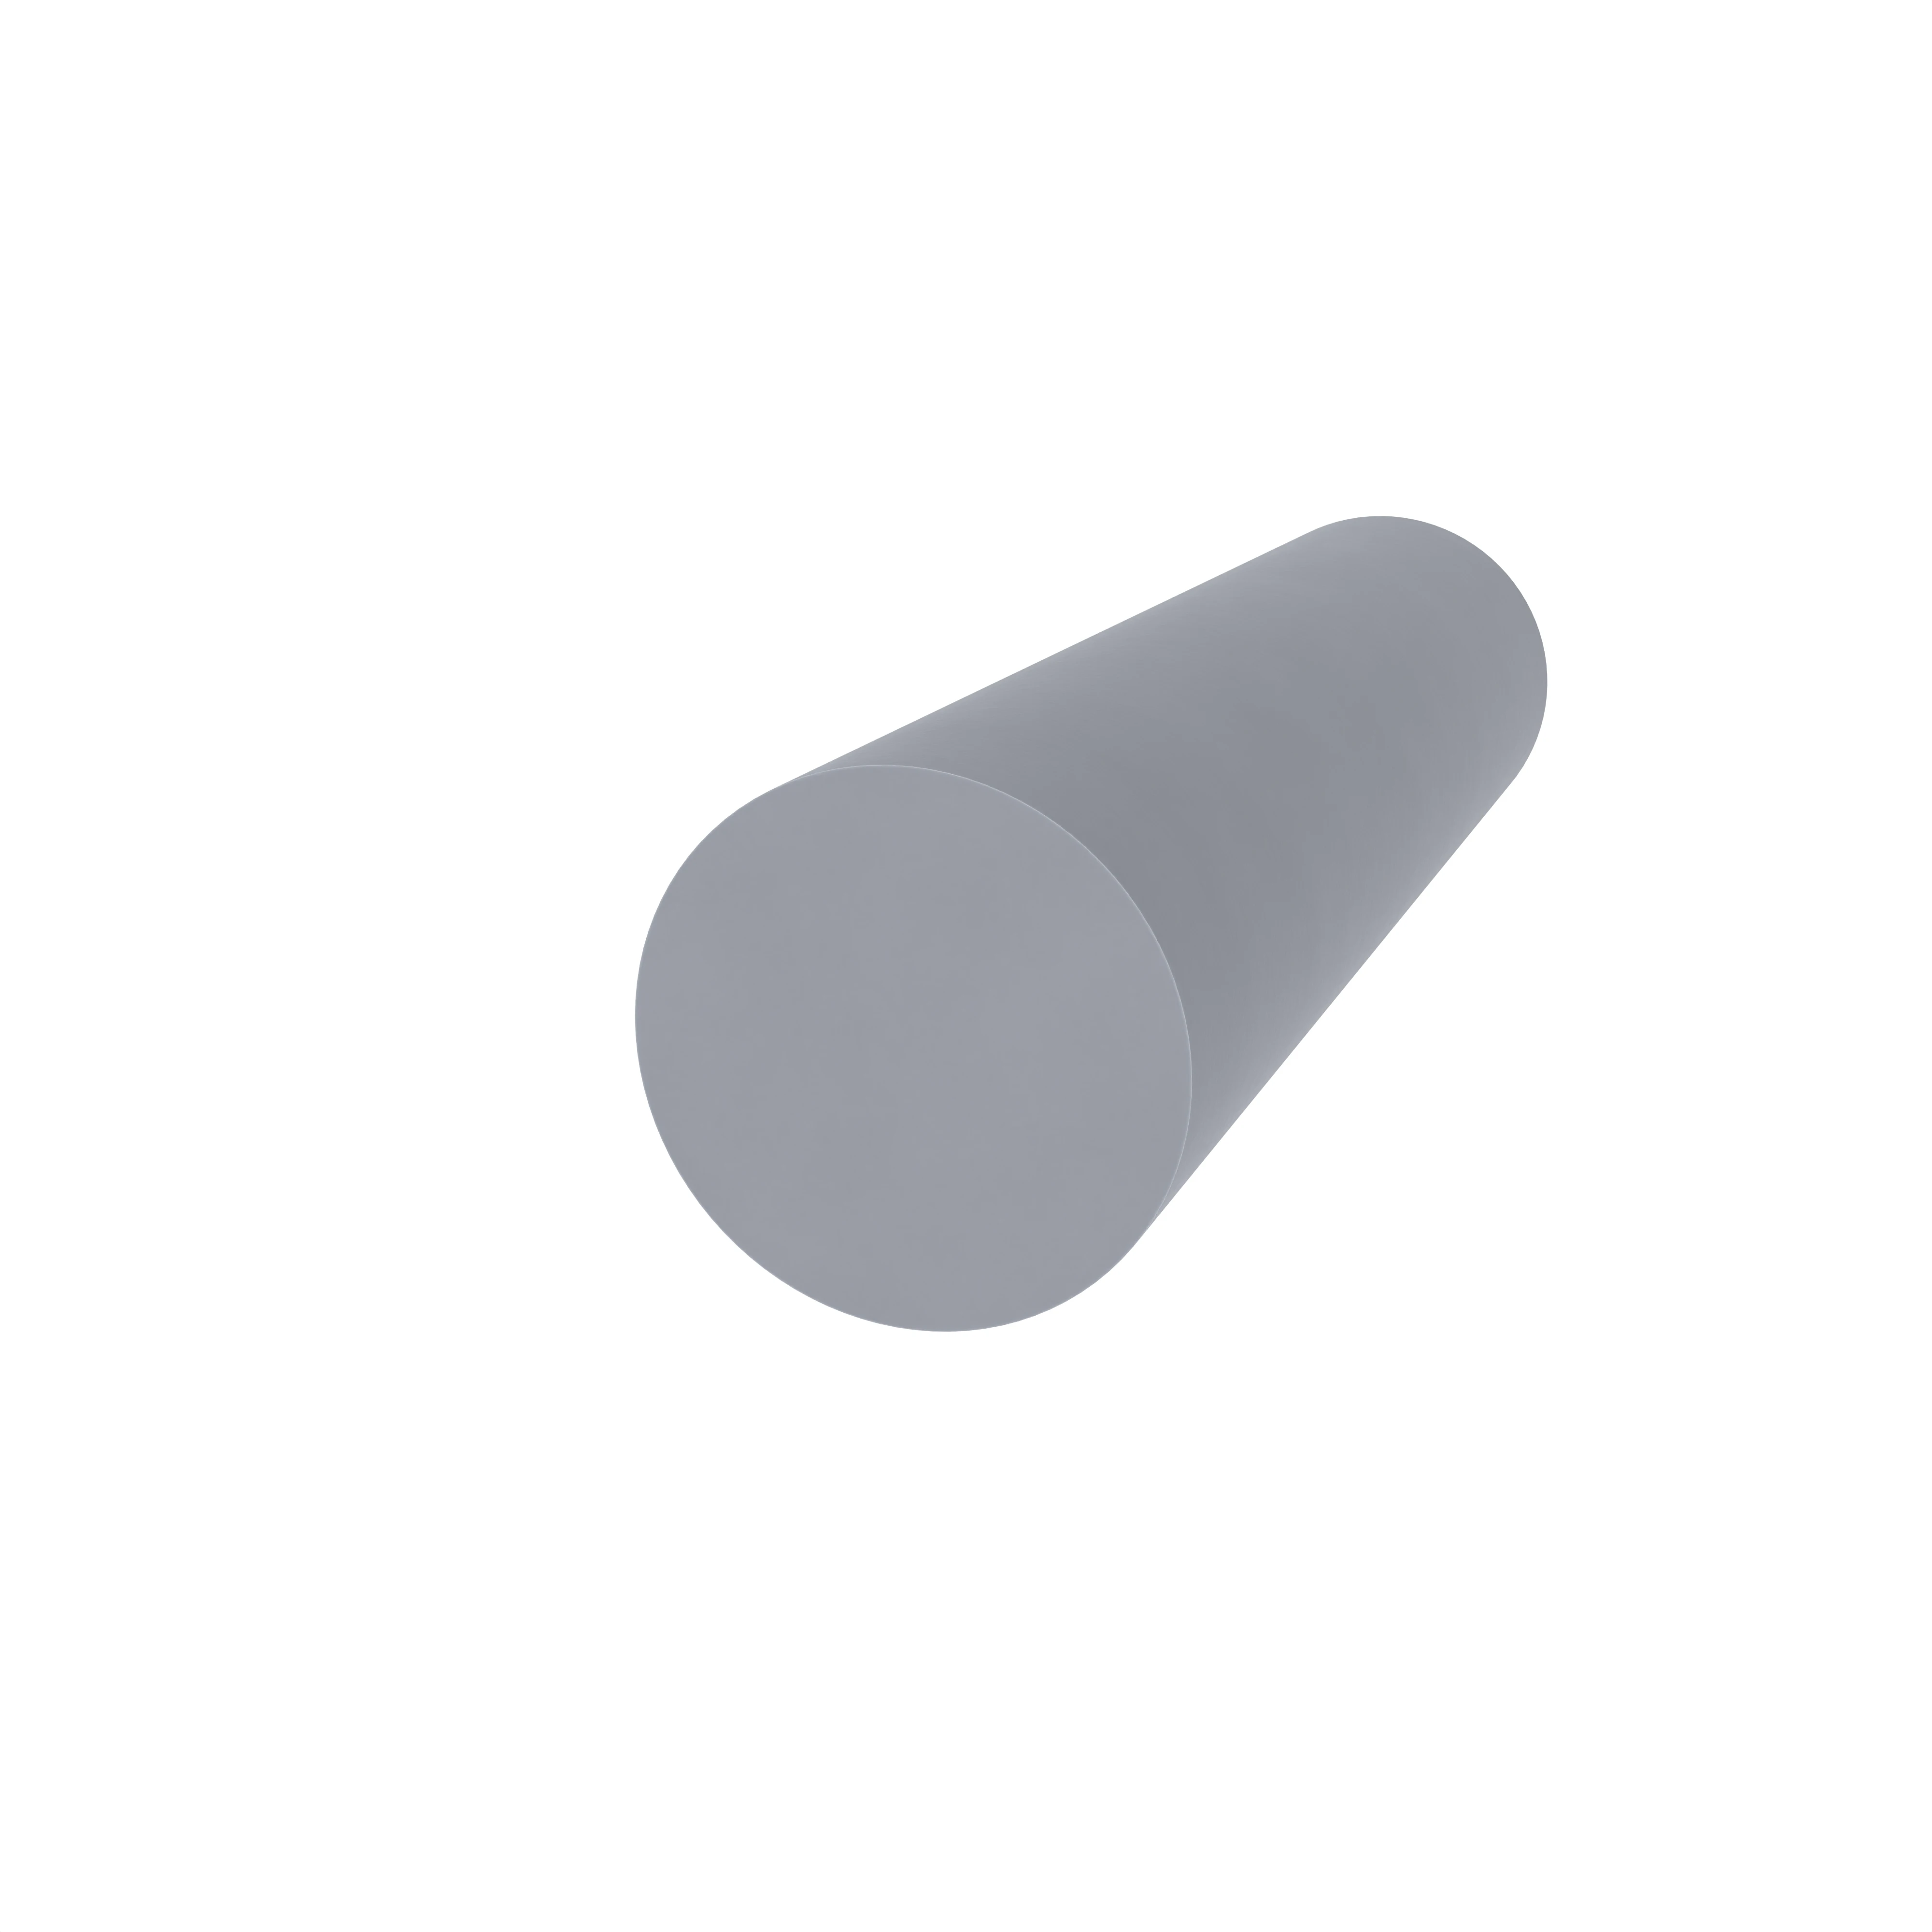 Moosgummidichtung für Stahlzargen | 14 mm Durchmesser | Farbe: grau